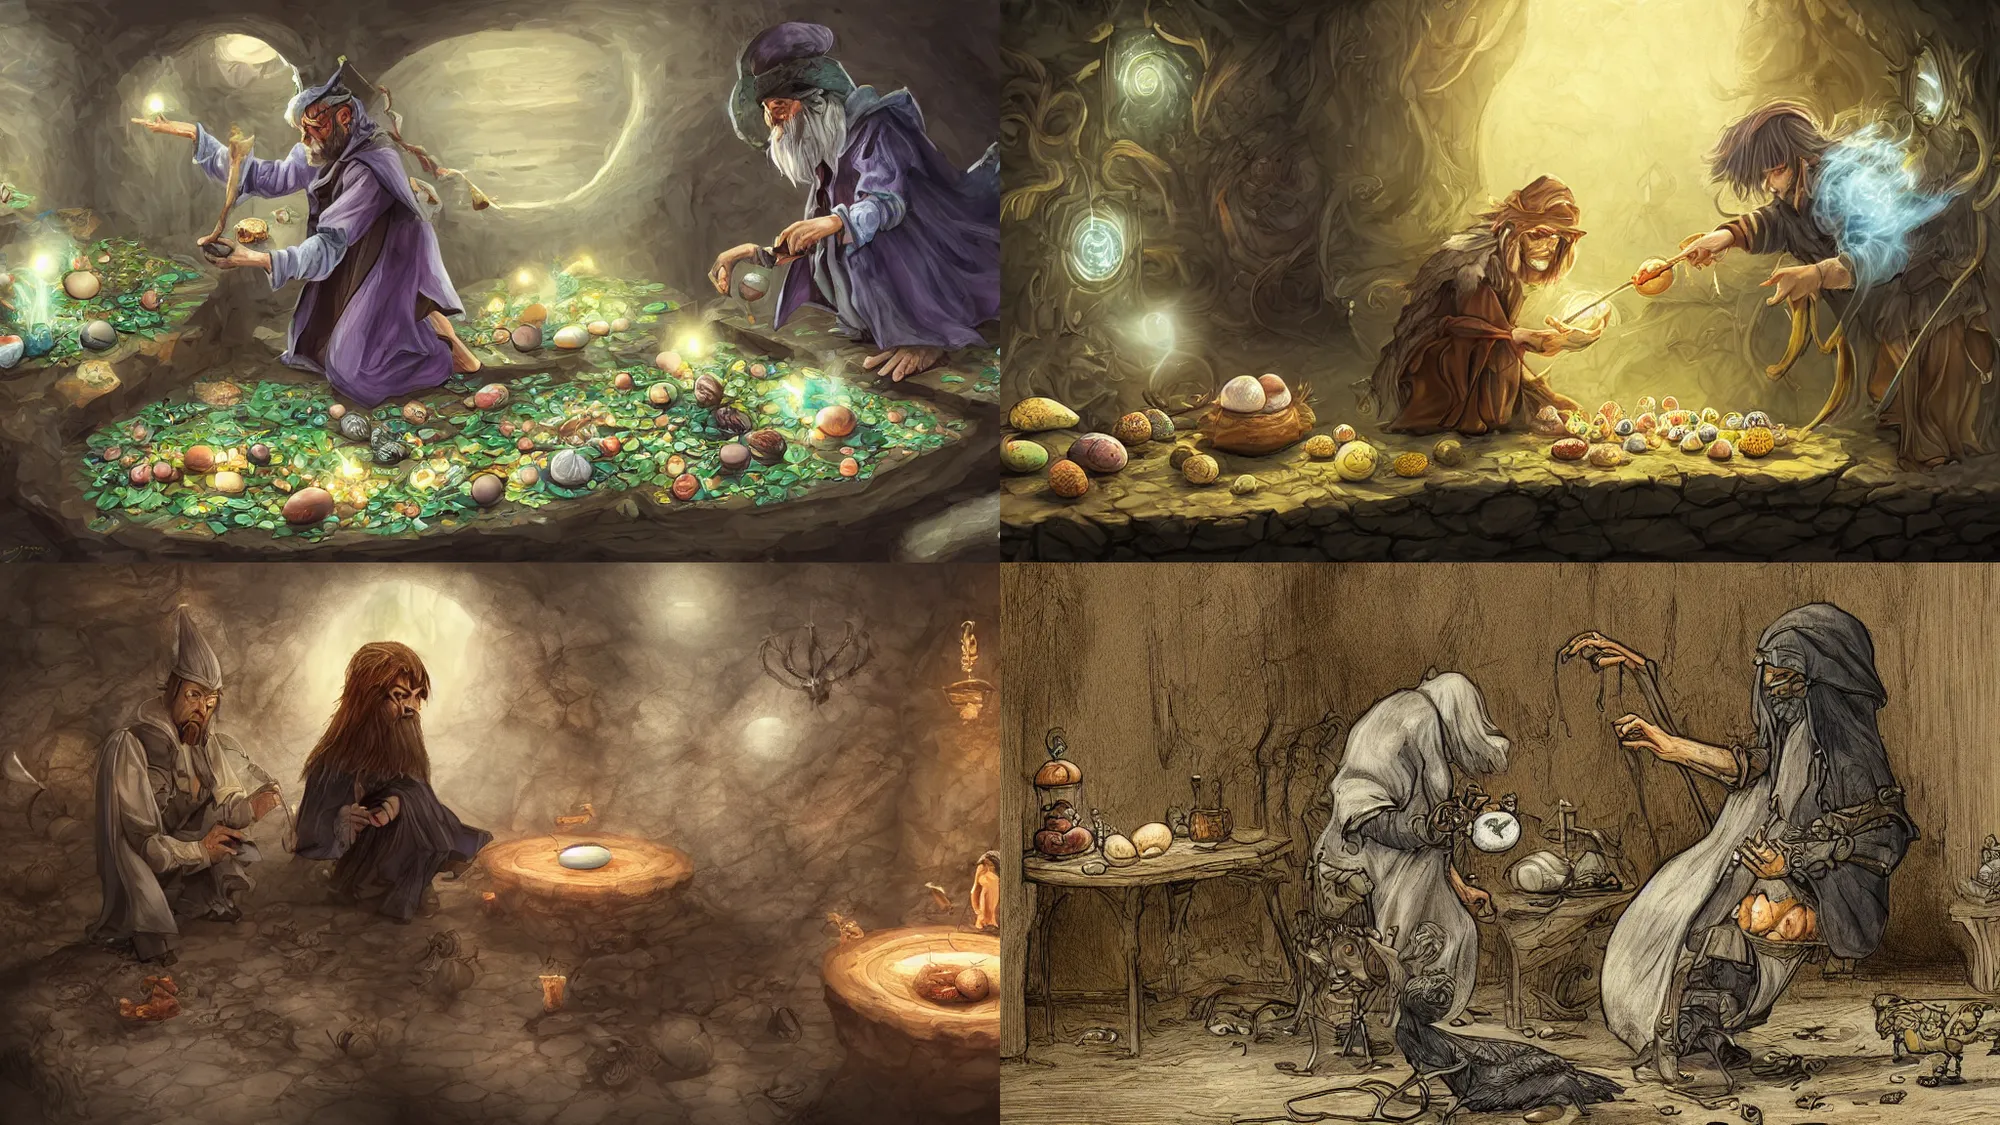 Prompt: wizard examining eggs, digital 2d fantasy art